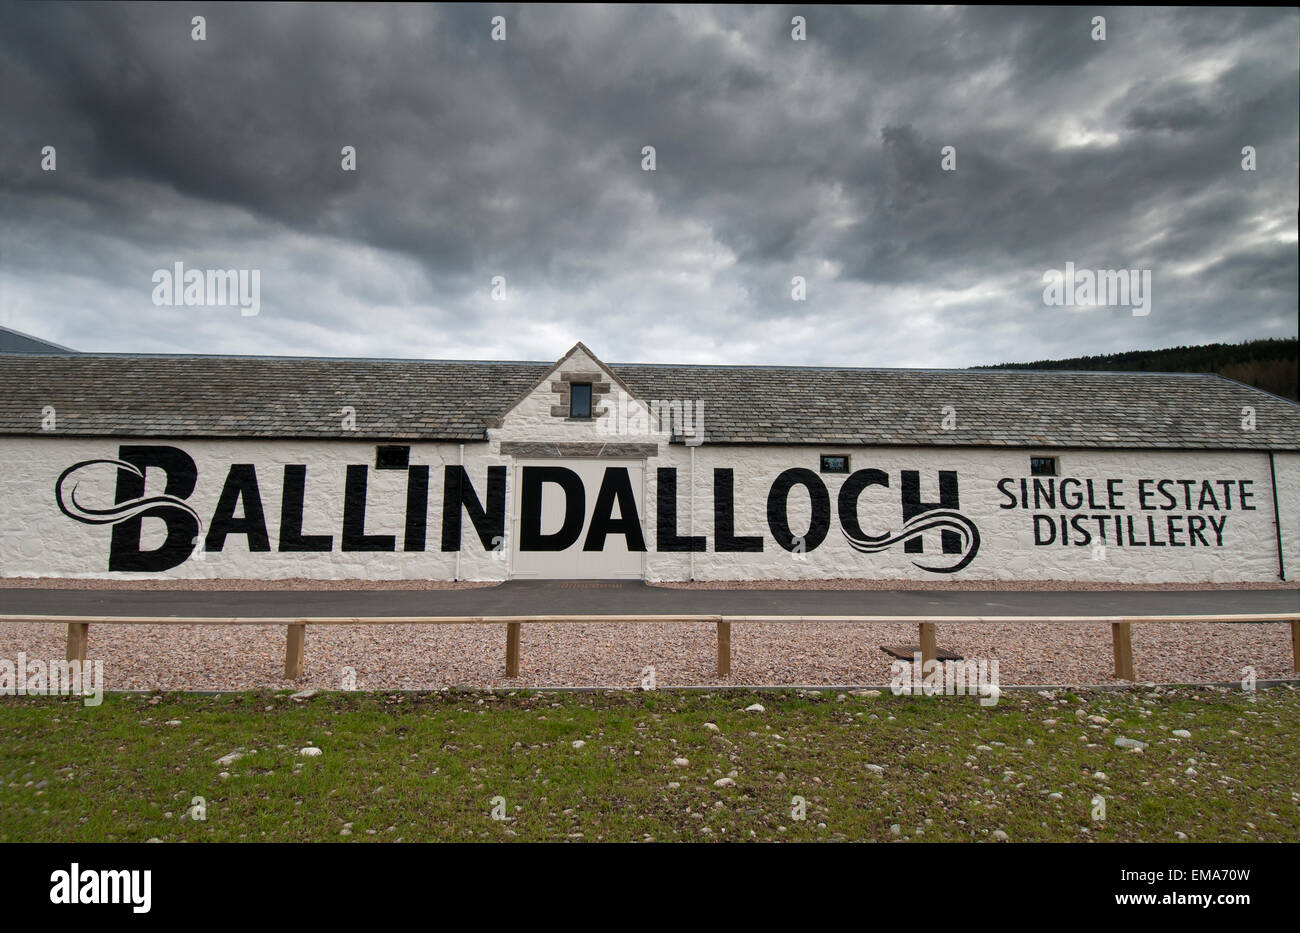 La nouvelle distillerie unique Estate Ballindalloch dans le Speyside, a ouvert le 16 avril 2015. 9677 SCO. Banque D'Images